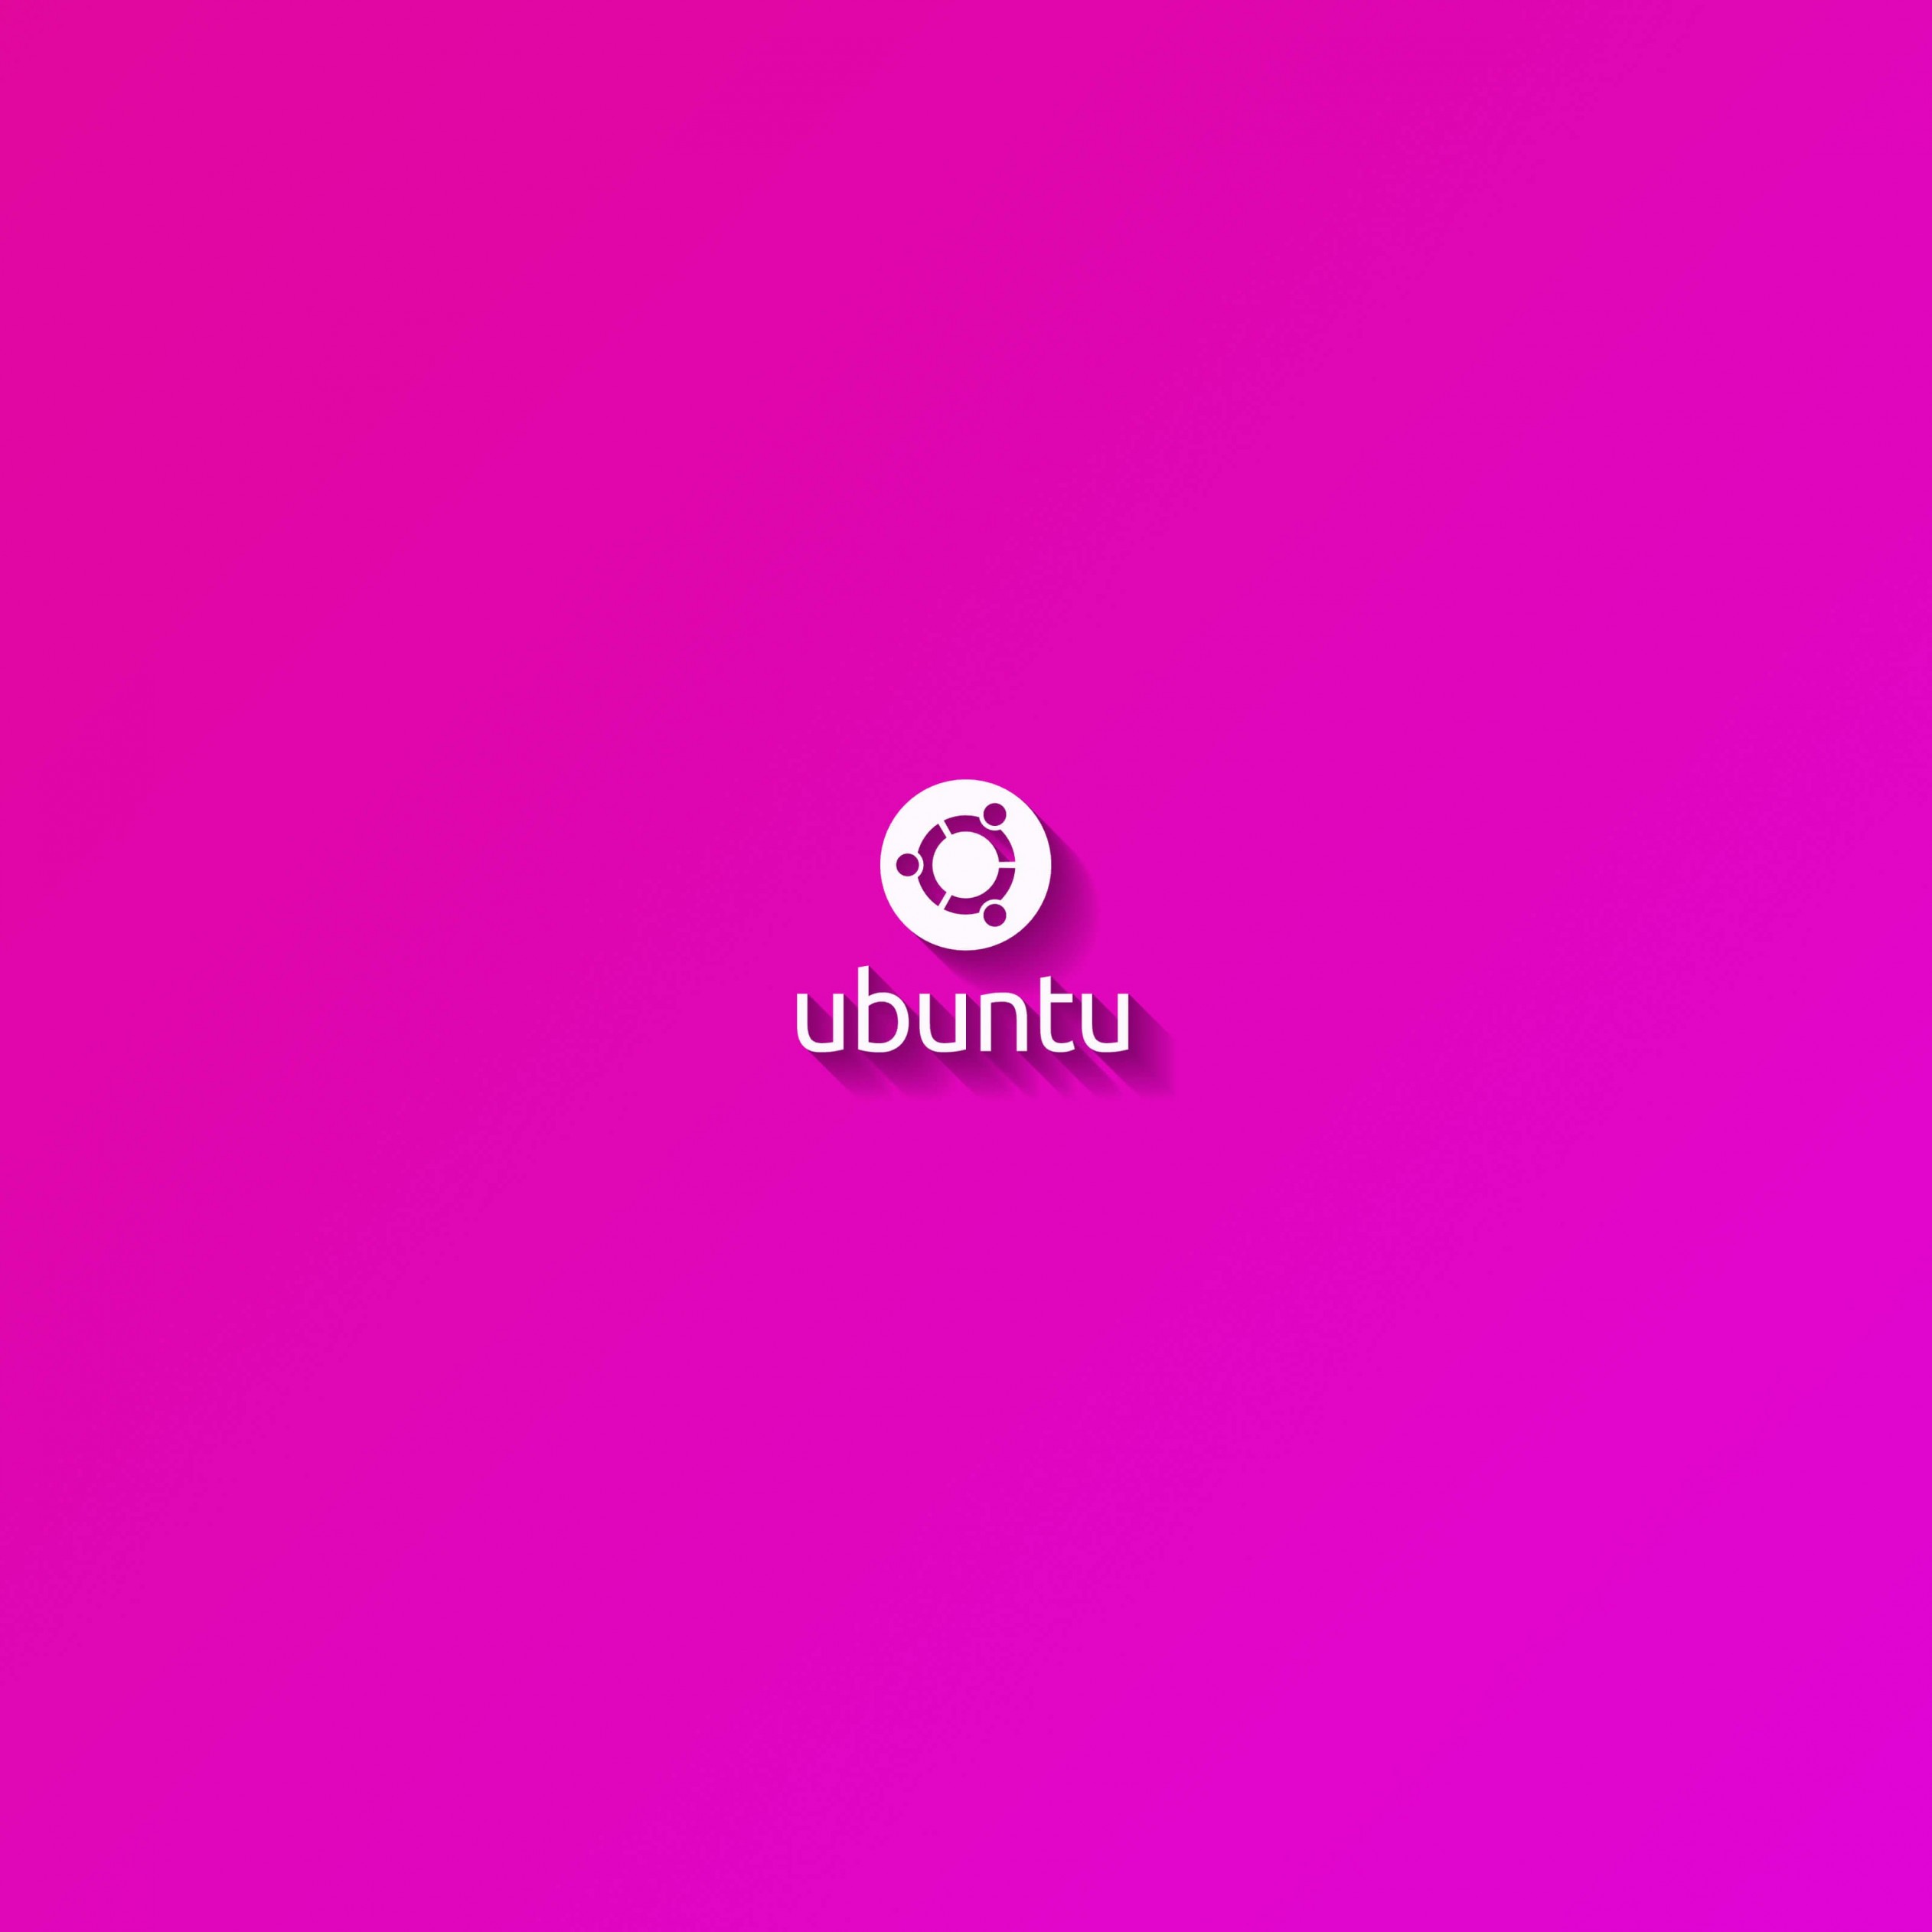 Ubuntu Flat Shadow Pink Wallpaper for Apple iPad Air